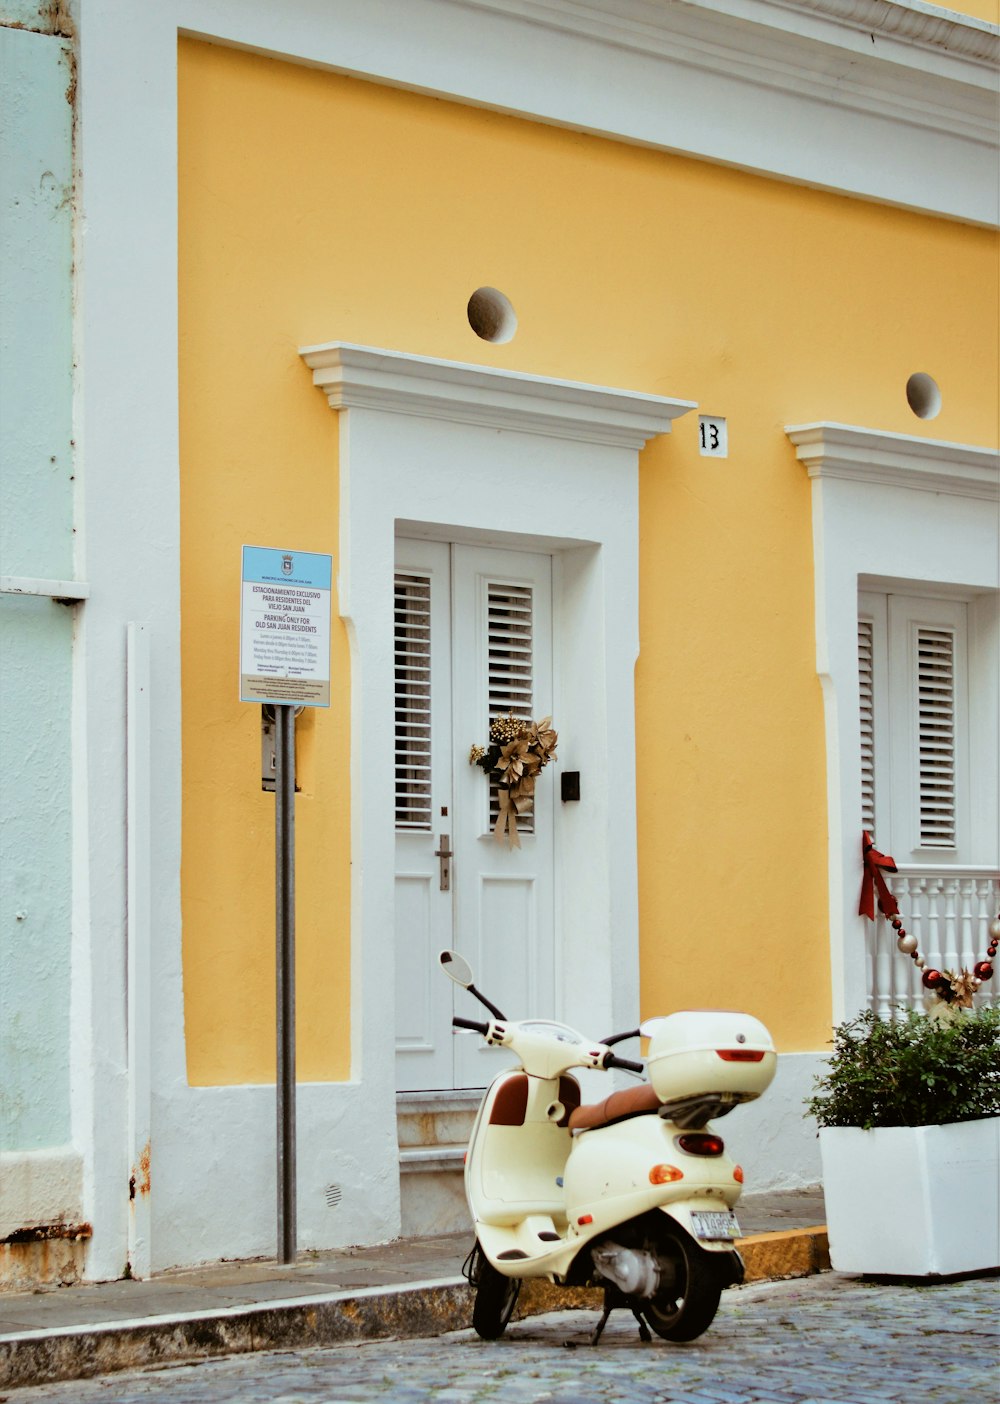 parc de scooter blanc devant la maison de la porte